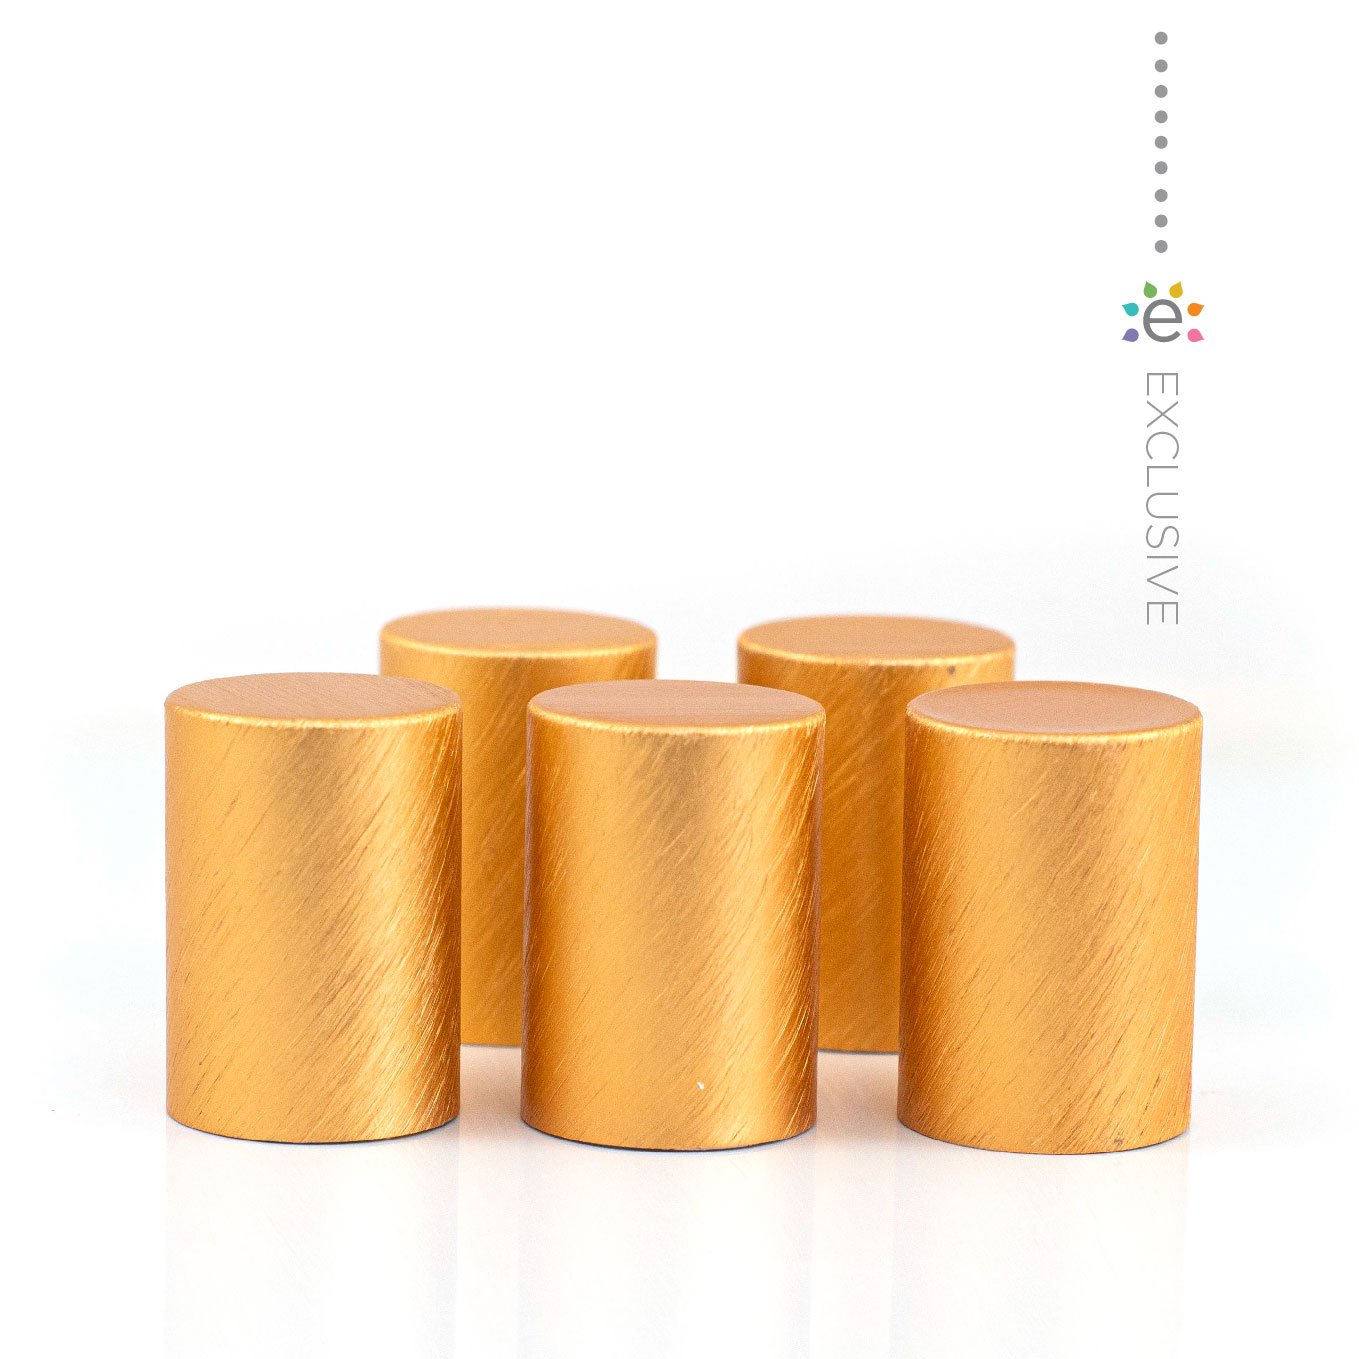 Fém kupakok (5 darab) Roll-on üveghengerhez, Narancssárga/Réz színben